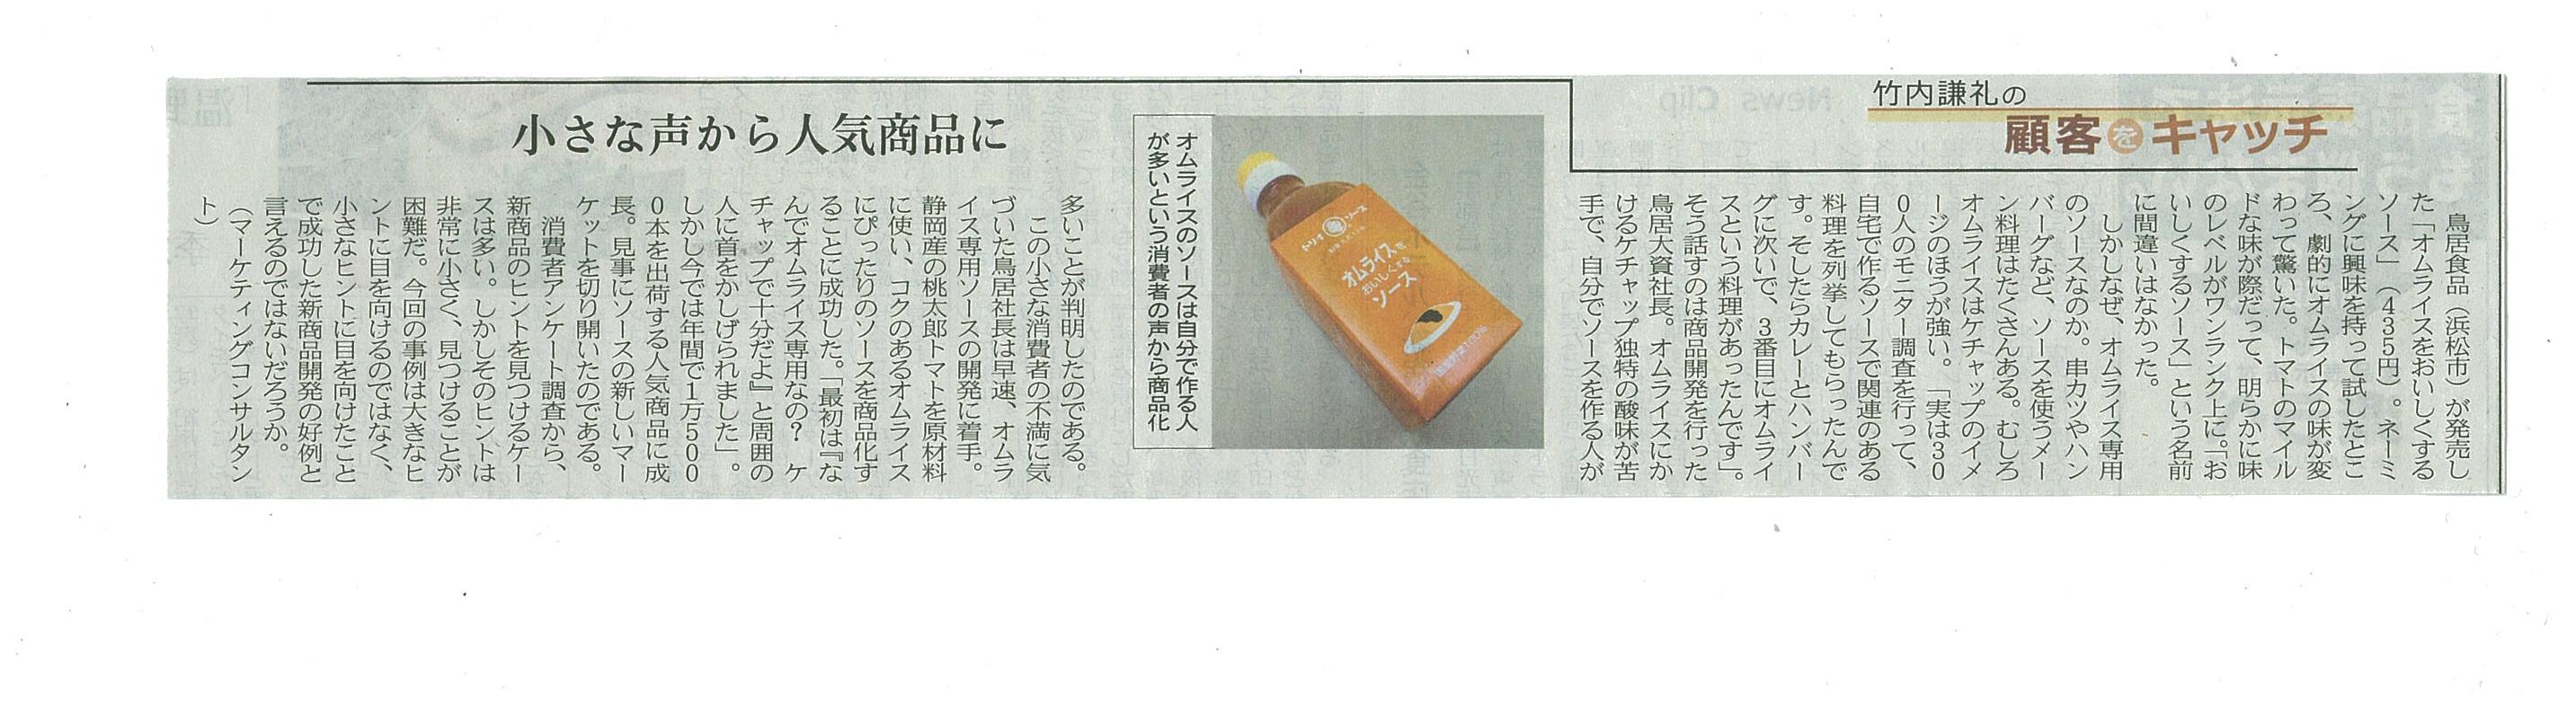 http://www.torii-sauce.jp/media/%E6%97%A5%E7%B5%8C%EF%BC%AD%EF%BC%AA.jpg